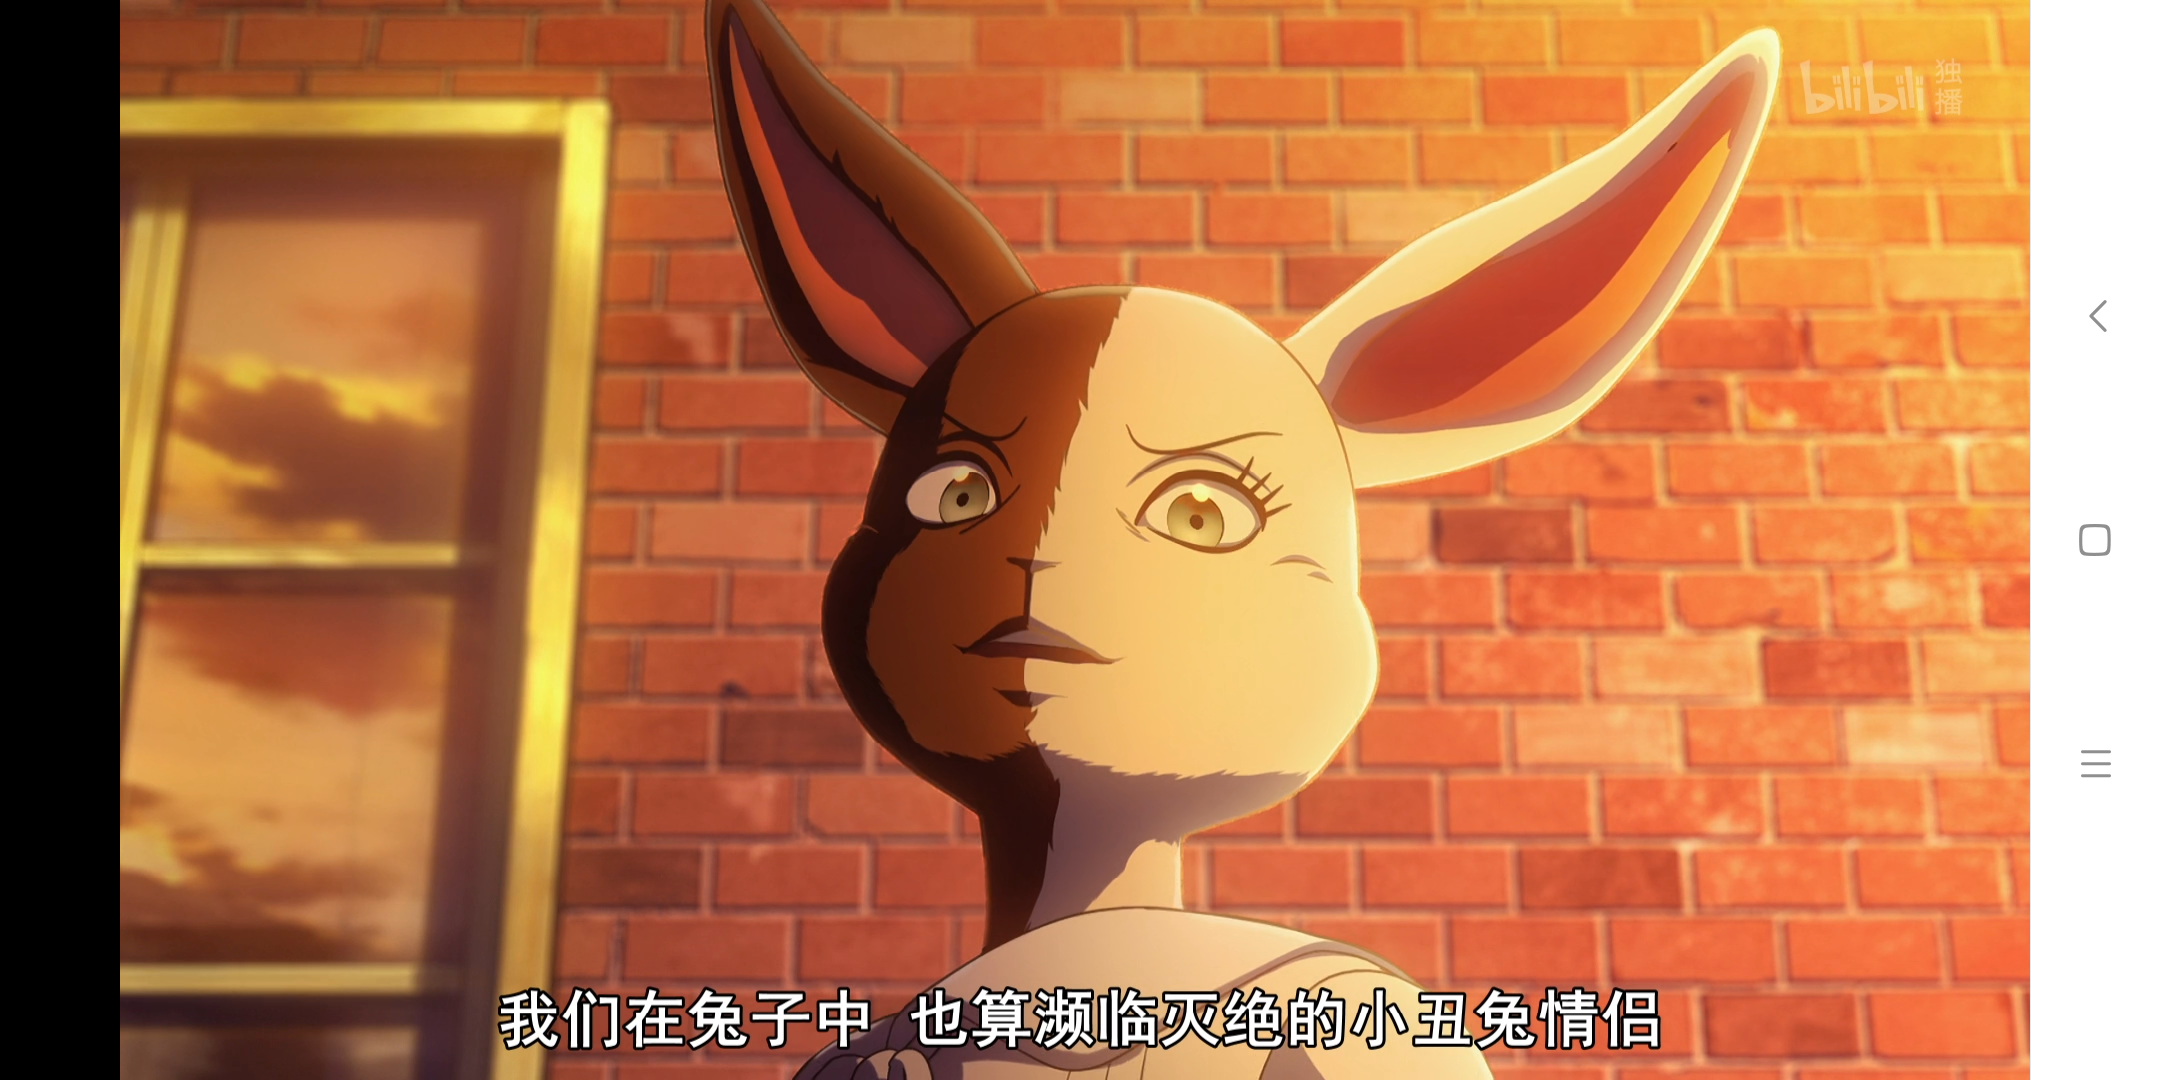 《动物狂想曲》里面的女主角春如果不是一只兔子而是个真正的人类